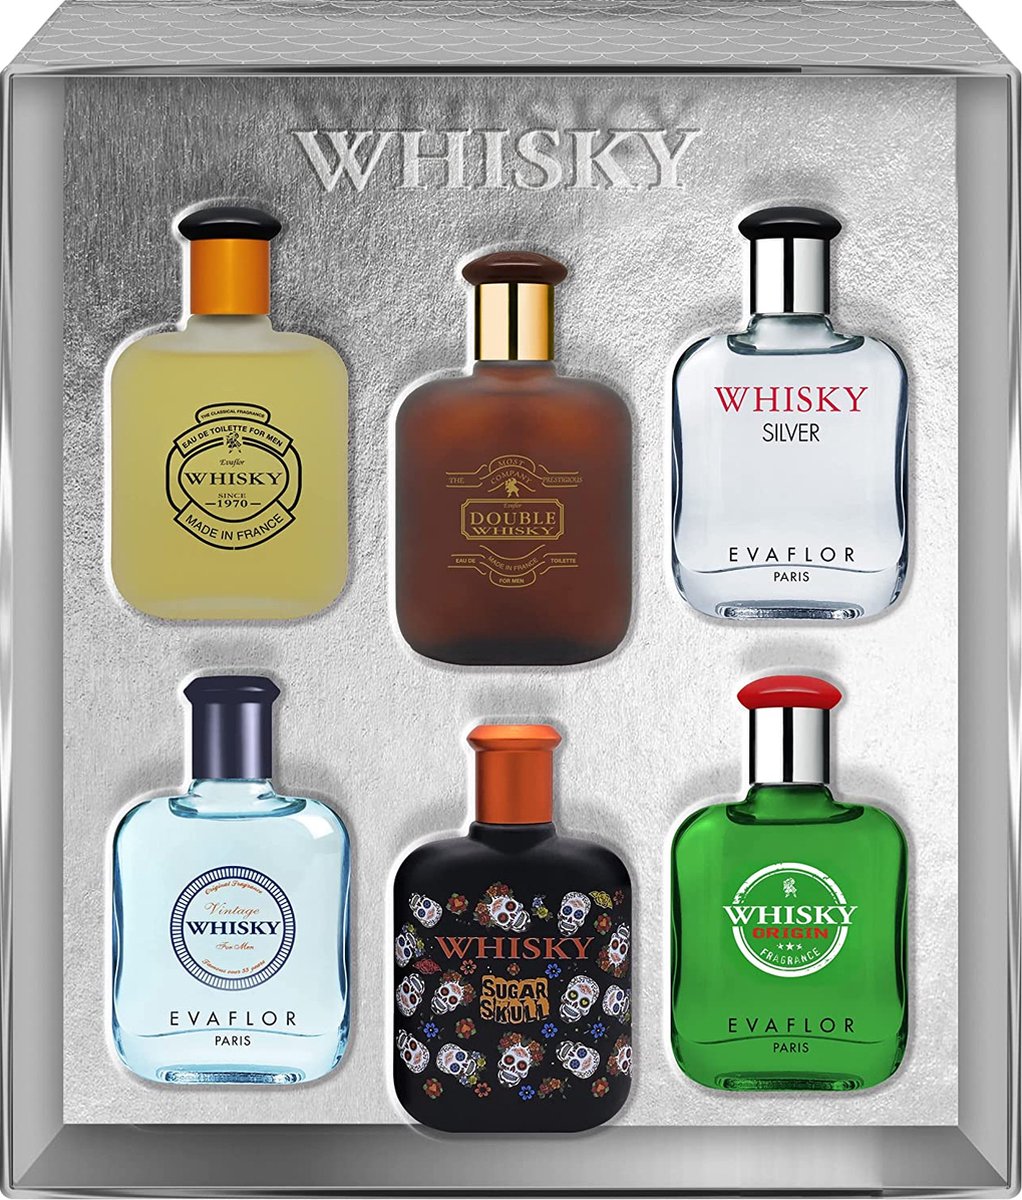 Whisky Parfum Miniatuurset For Men (Dit is het ideale cadeau als u niet weet wat u iemand wilt geven) - Evaflor